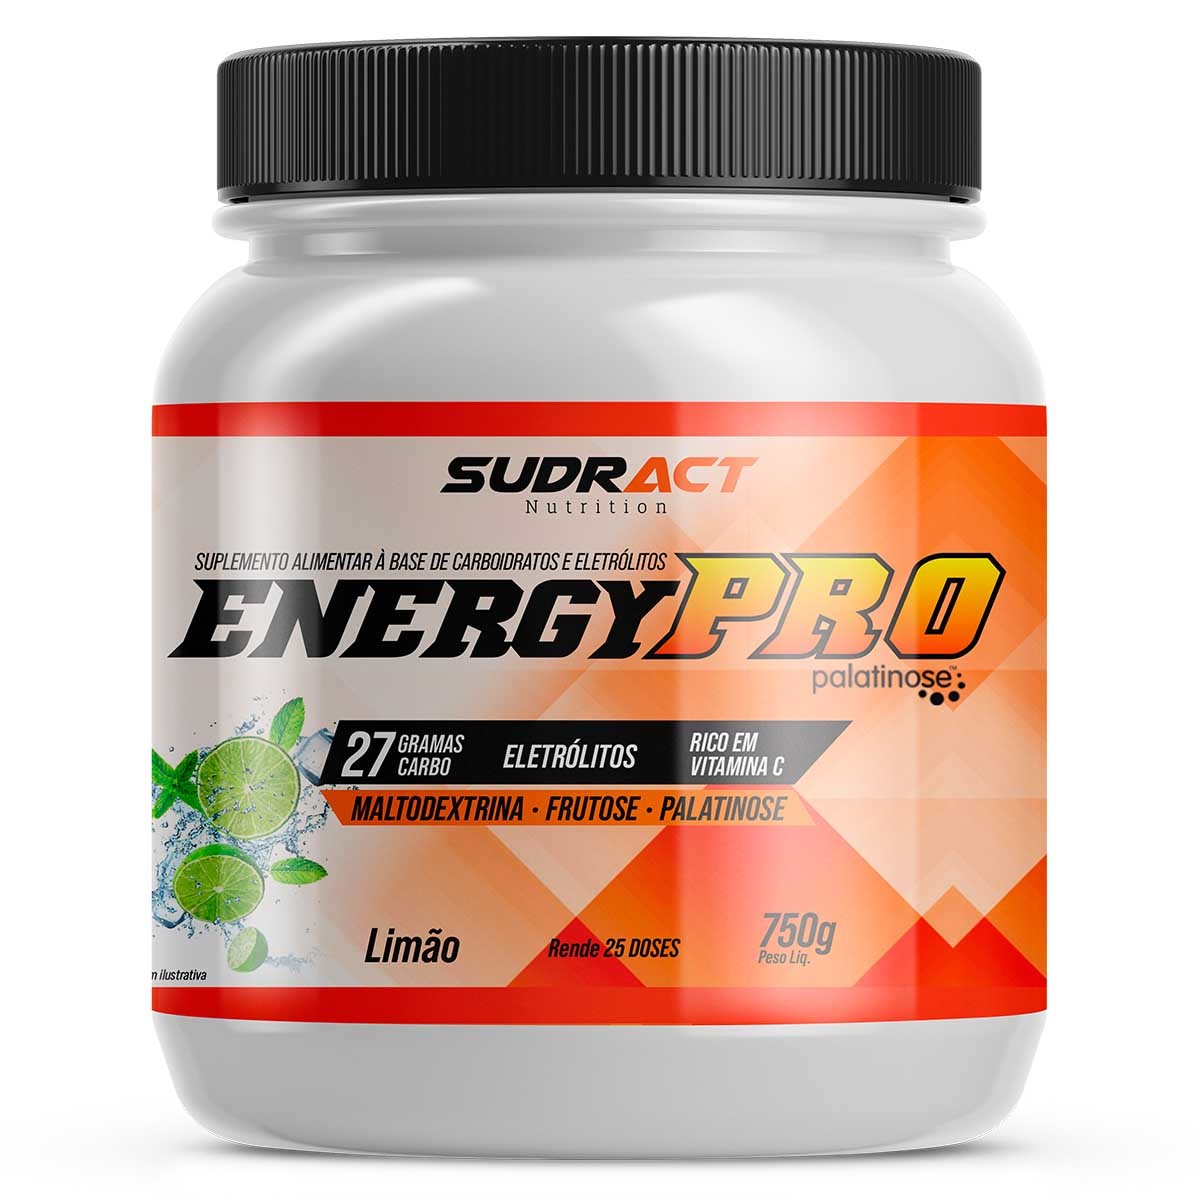 Energy Pro 750g - Sudract